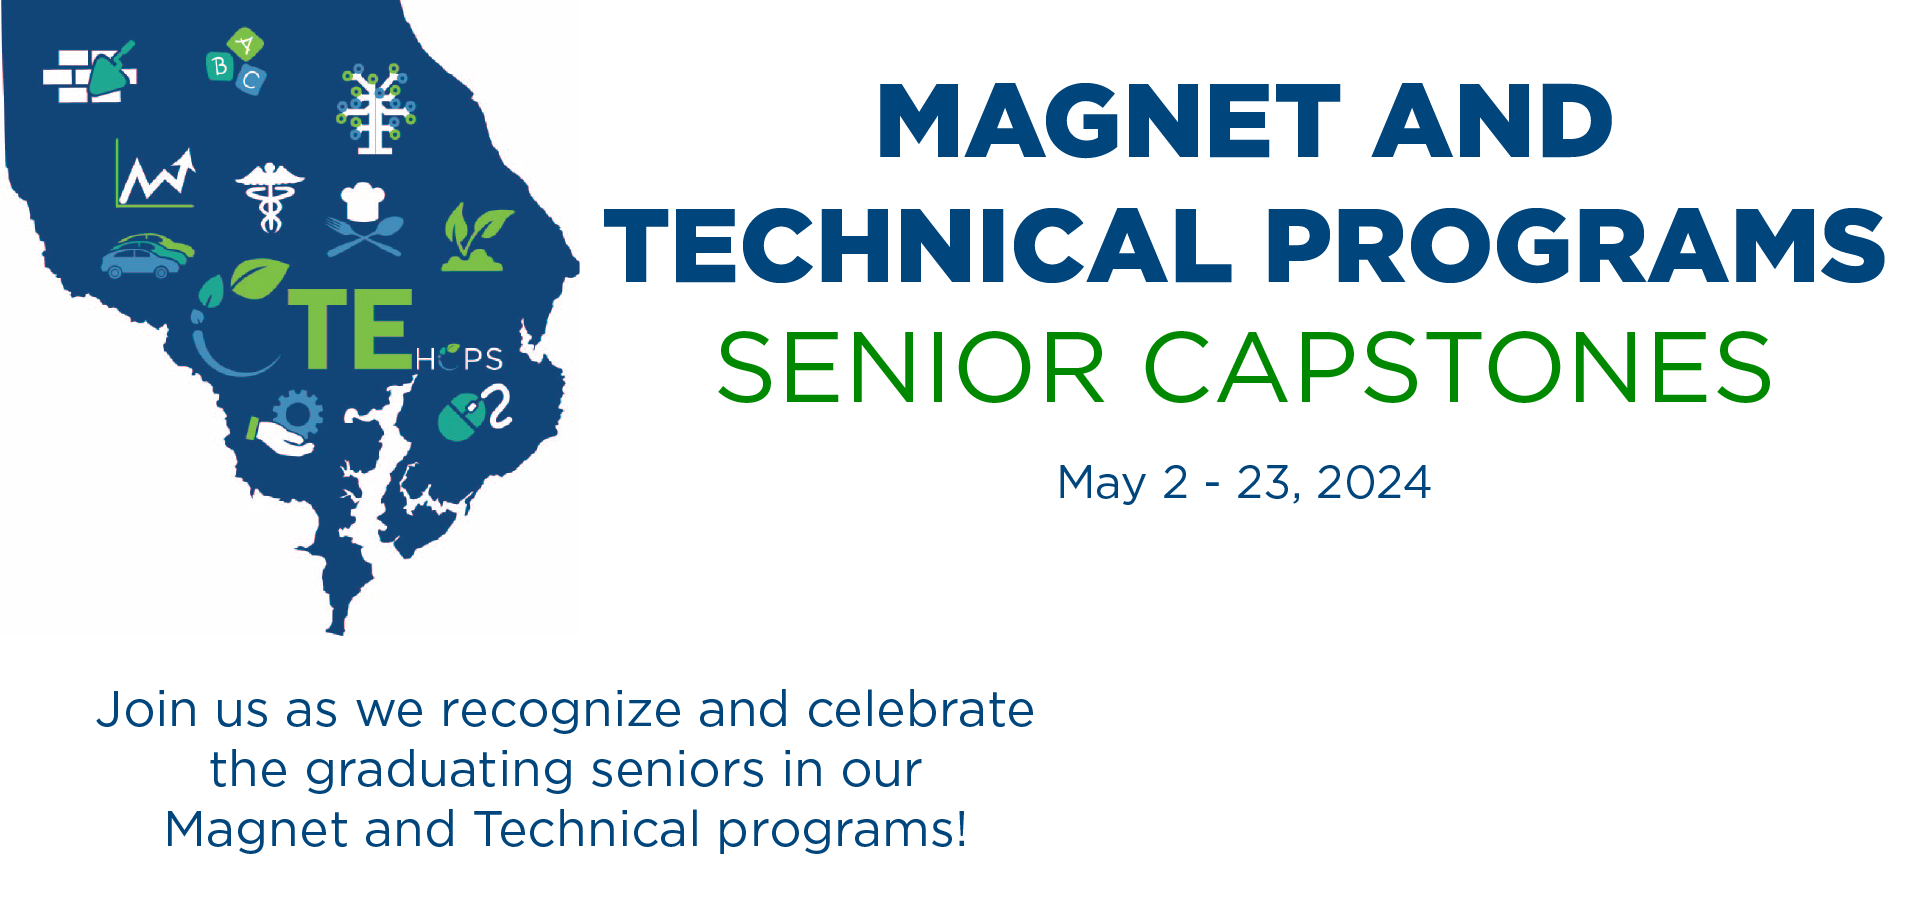 2024 Magnet Program Senior Capstones Schedule